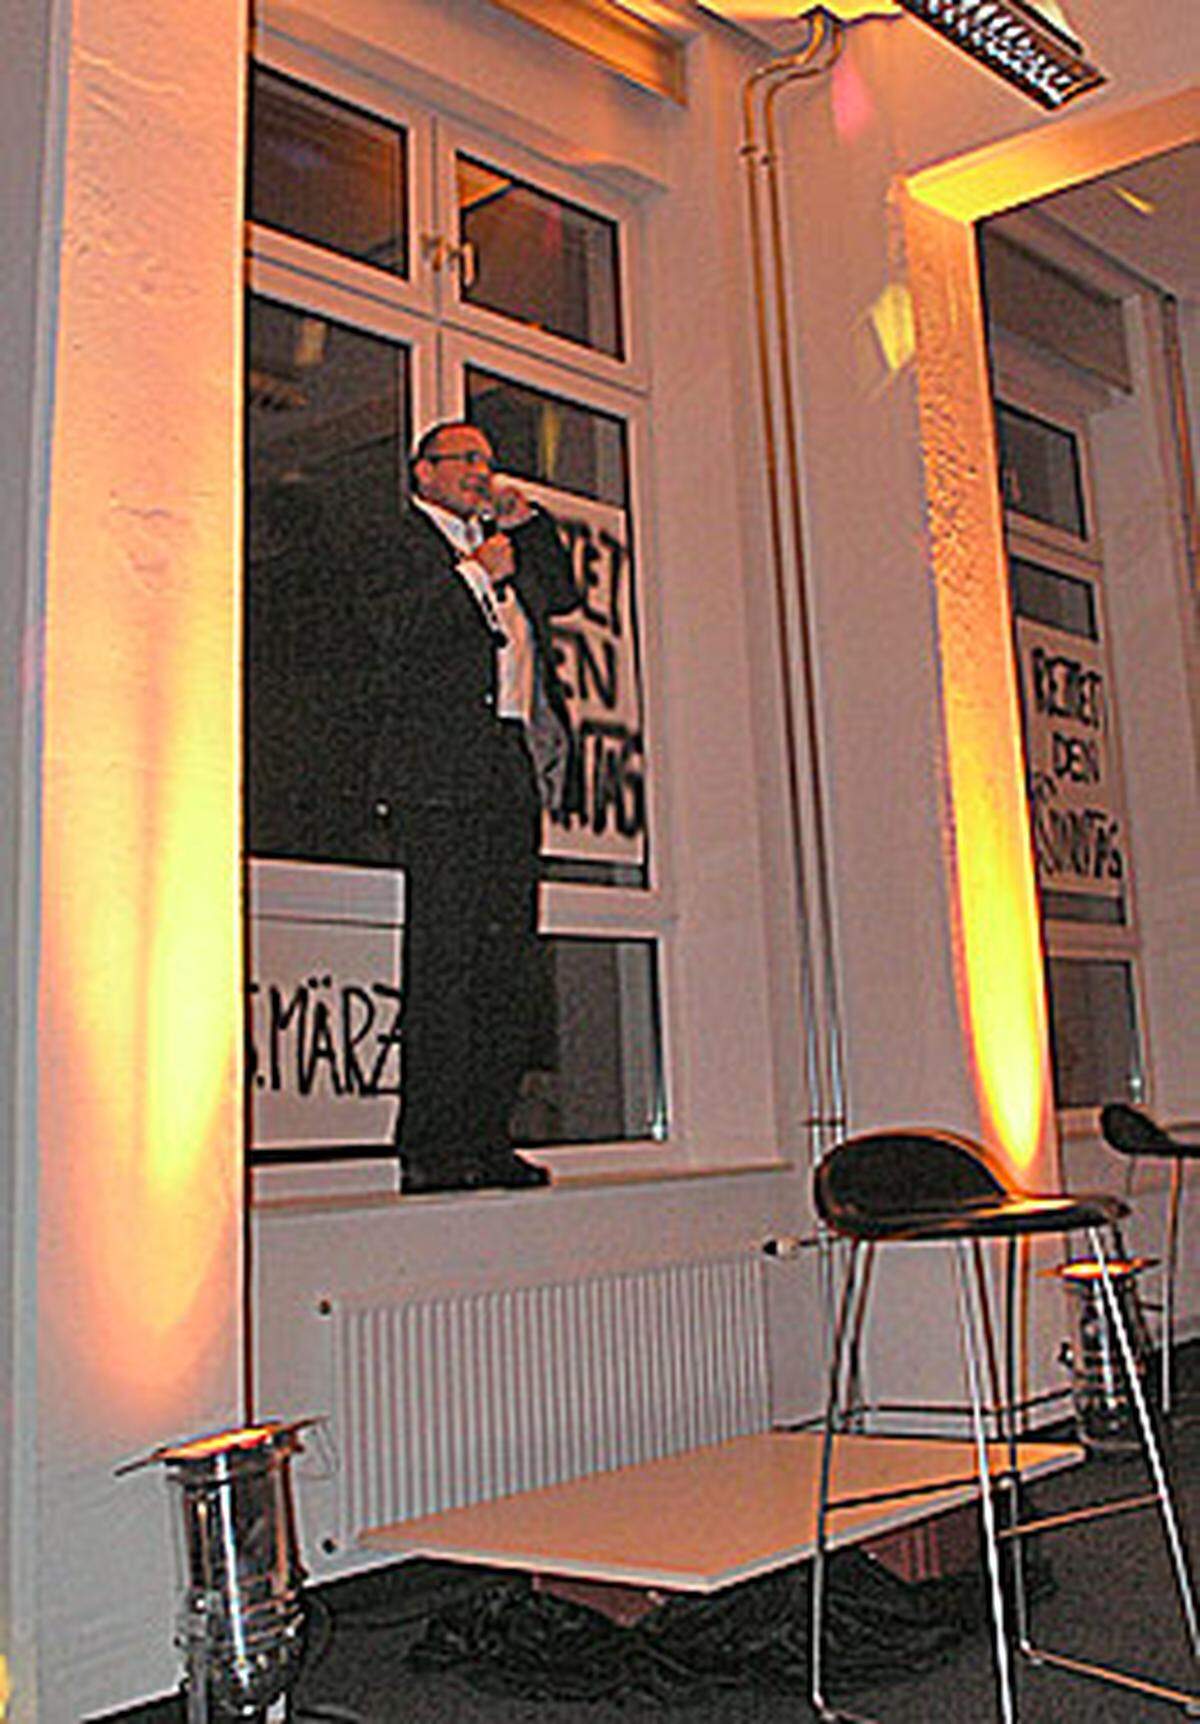 Geschäftsführer Gmeinbauer erklomm das Fenstersims für eine Rede und gratulierte der Mannschaft der "Presse" für die erste Ausgabe.